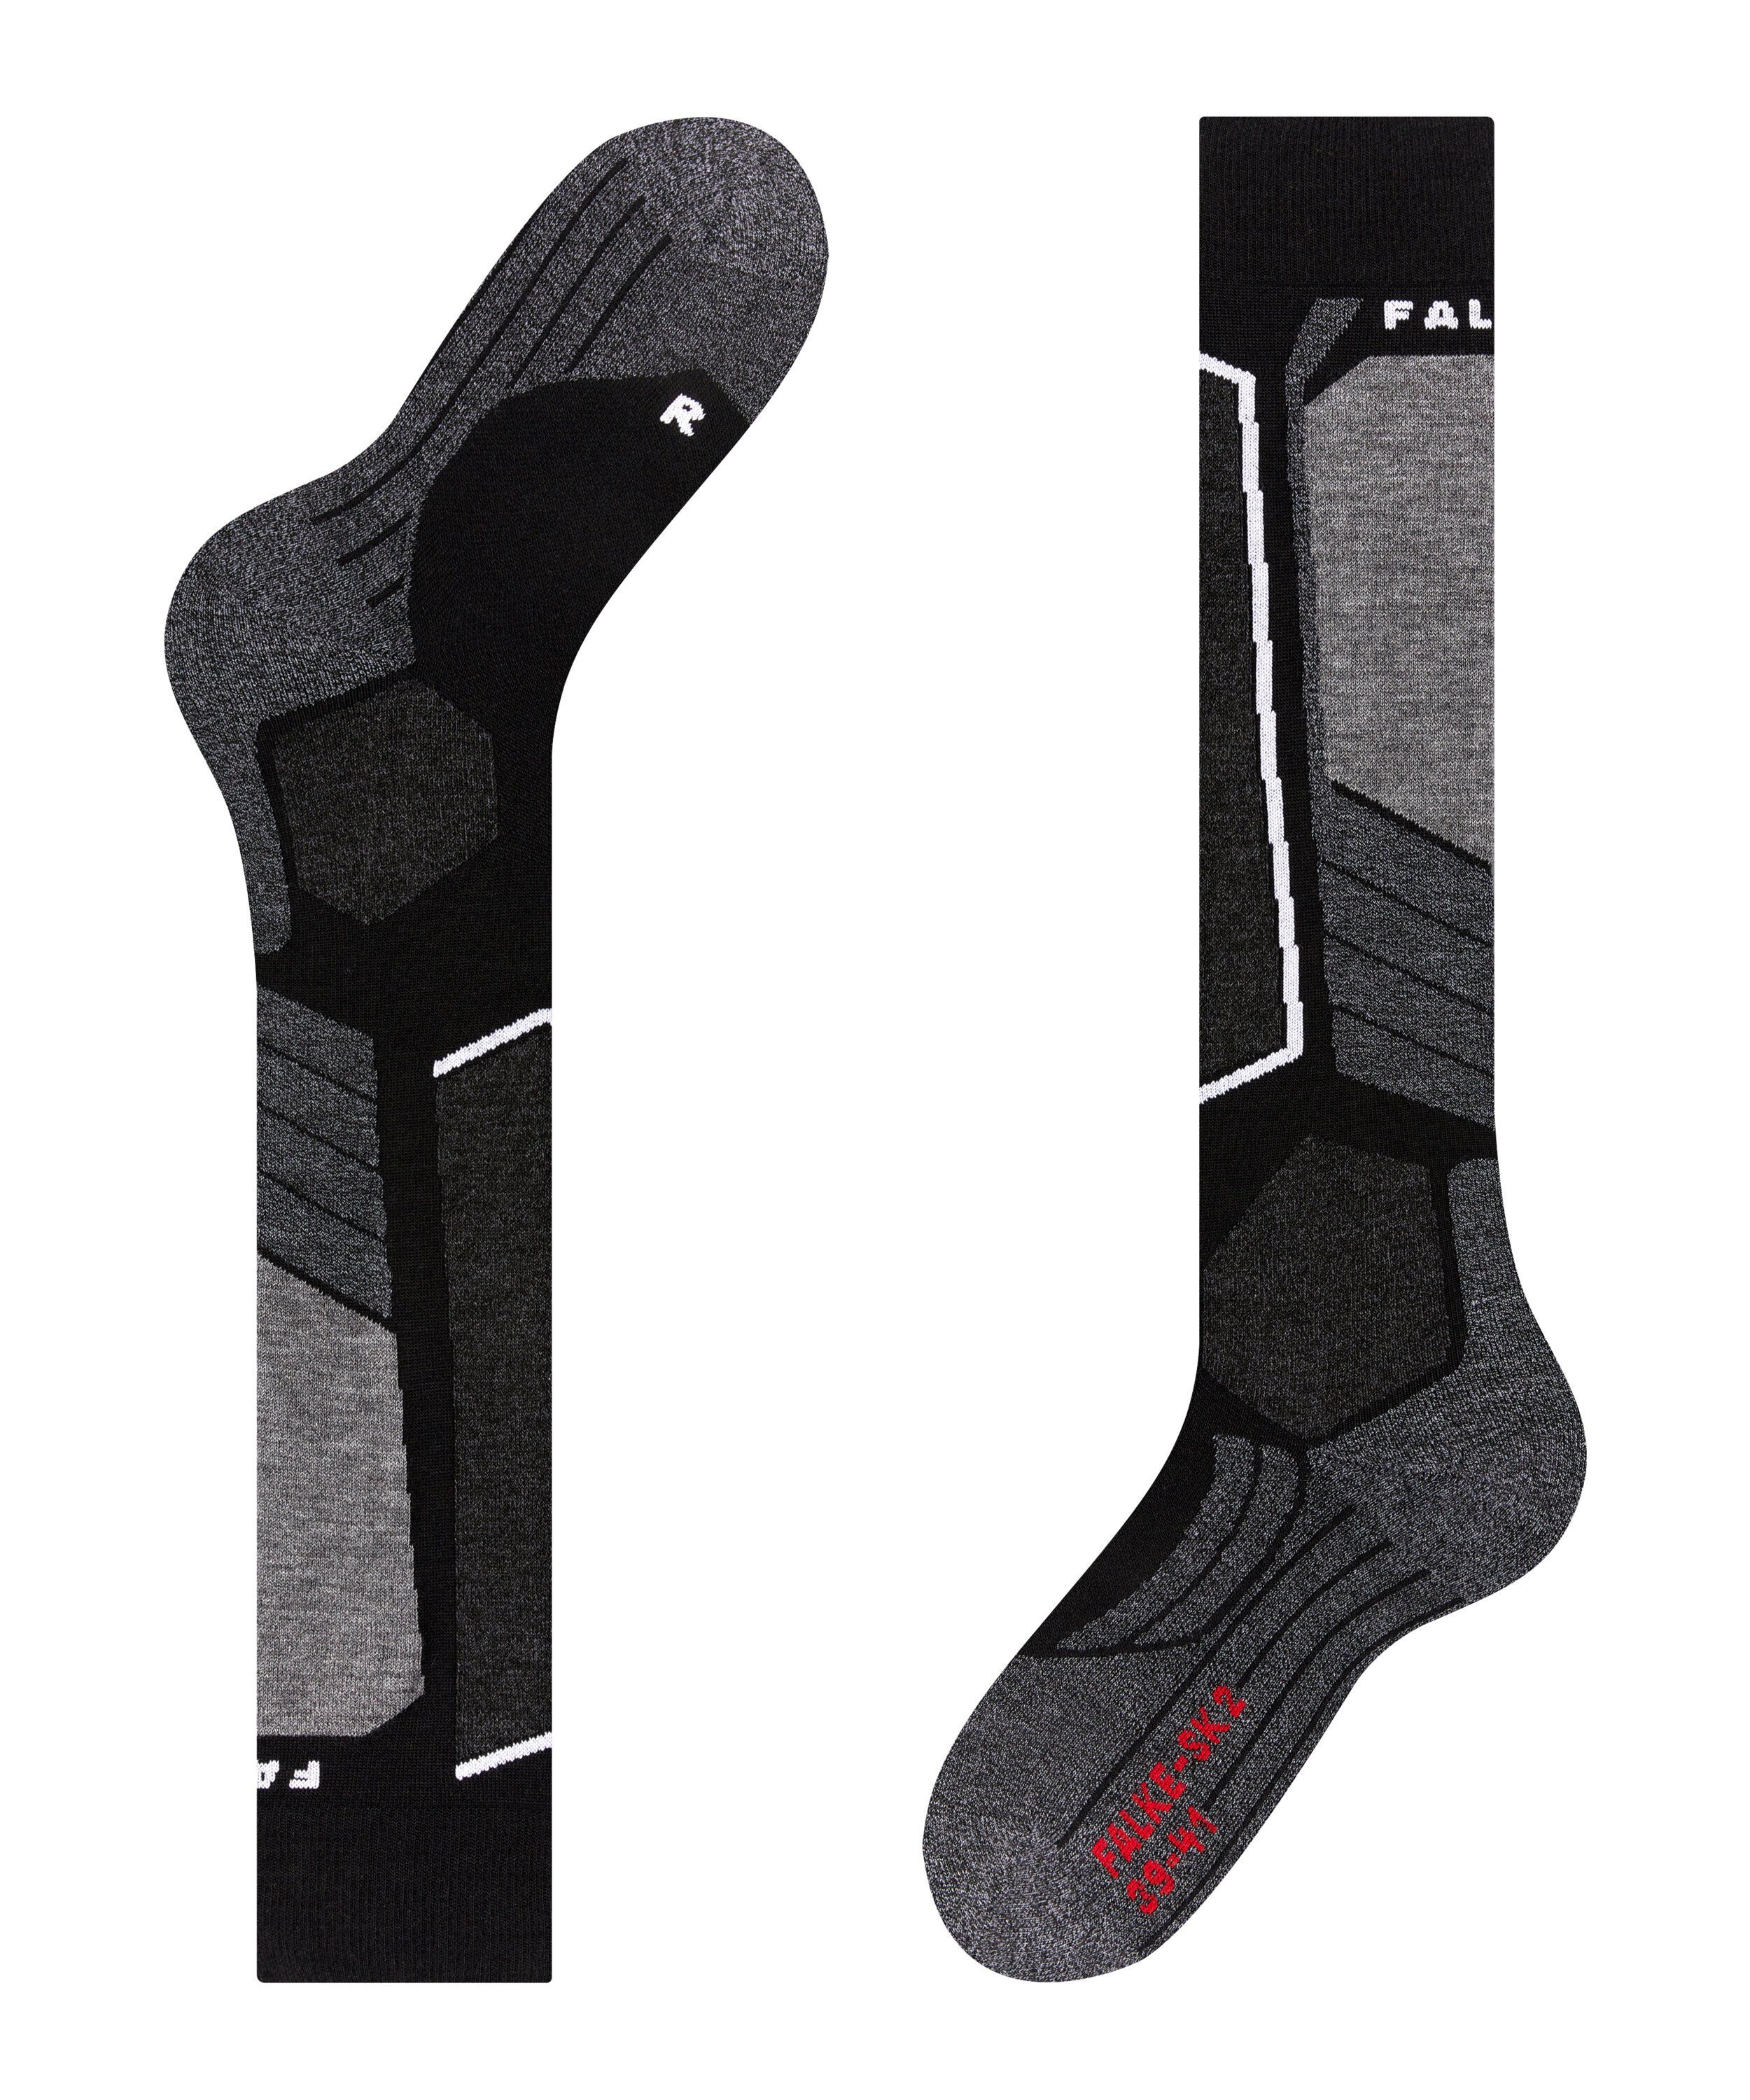 FALKE Skisocken mit Intermediate (1-Paar) Kontrolle (3010) und SK2 Polsterung black-mix mittelstarker Komfort für